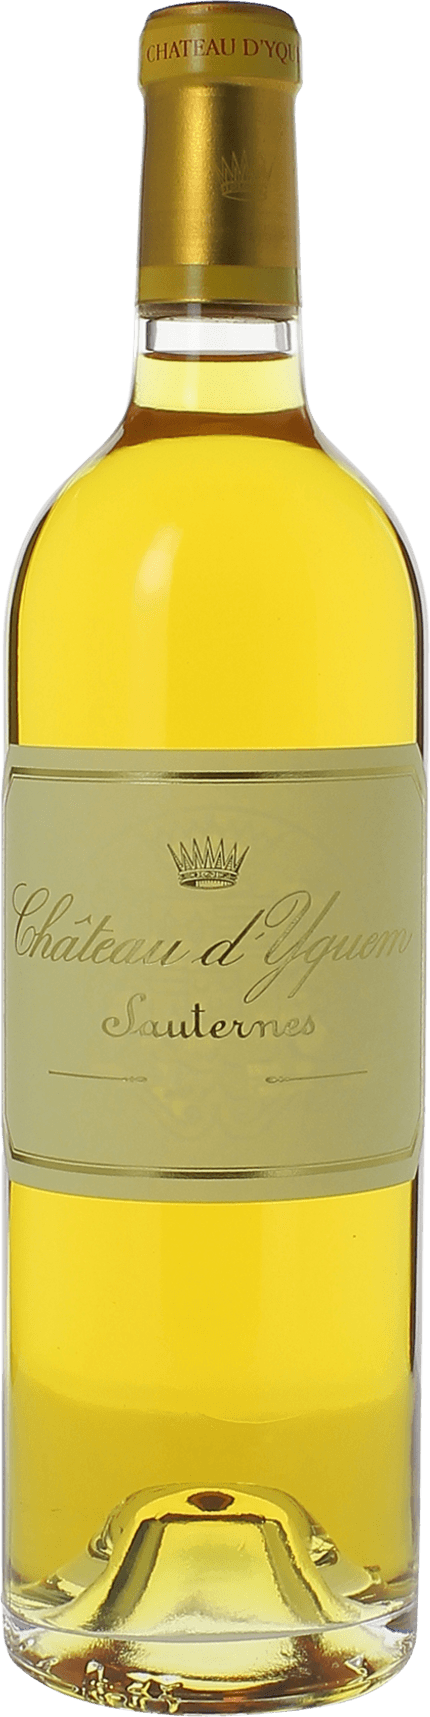 Yquem 1988 1er Grand cru class Sauternes, Bordeaux blanc